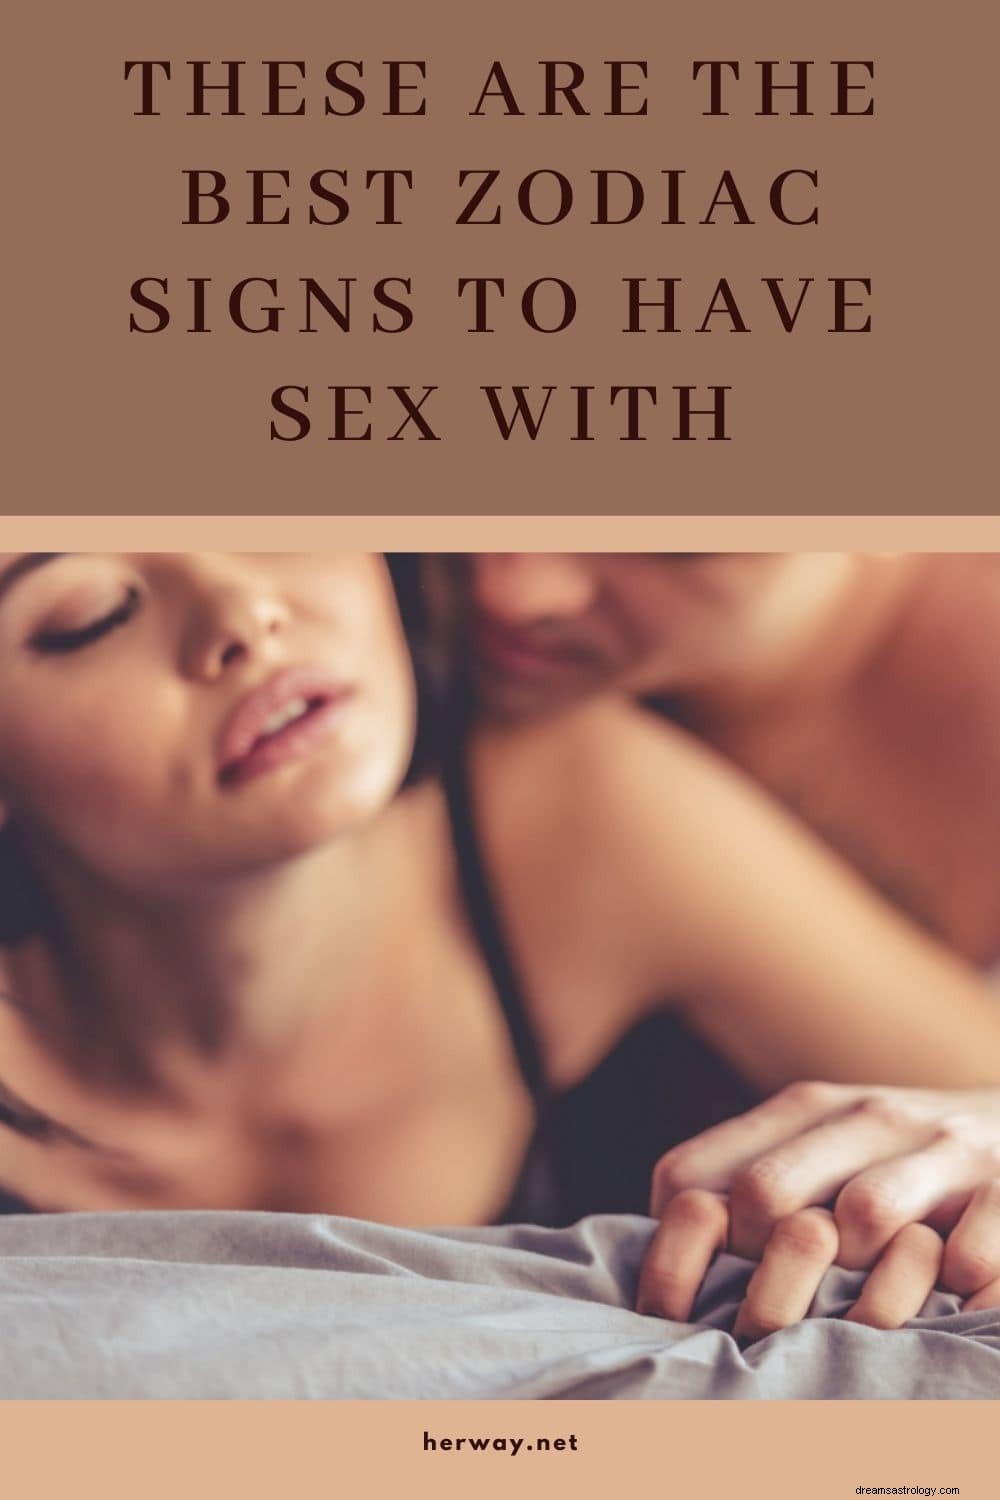 To najlepsze znaki zodiaku do uprawiania seksu